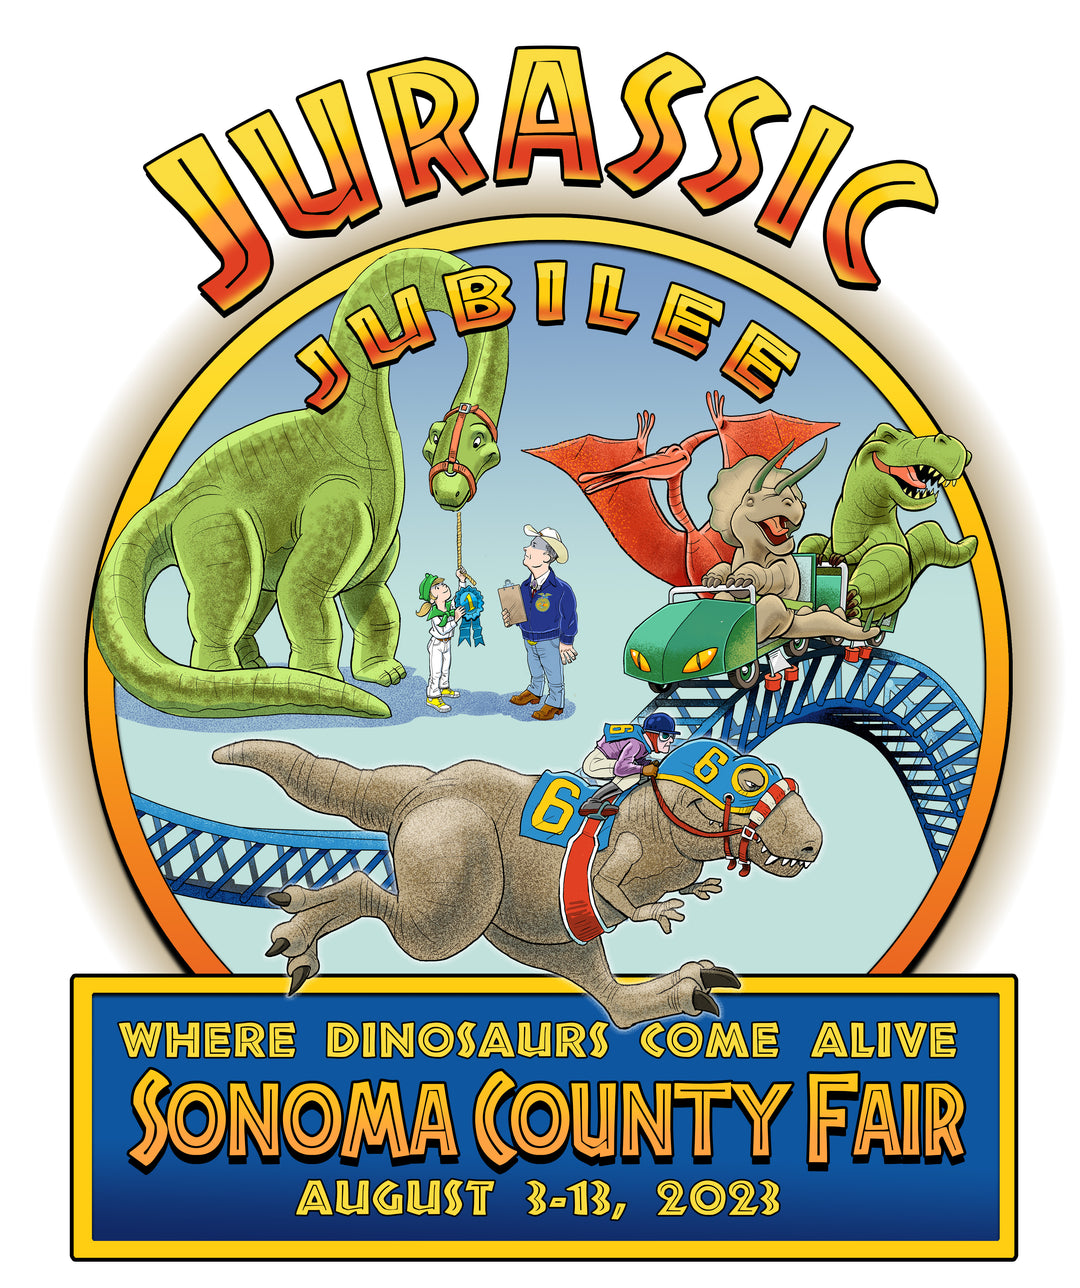 The Sonoma County Fair Announces Dates and Theme Sonoma County Fair